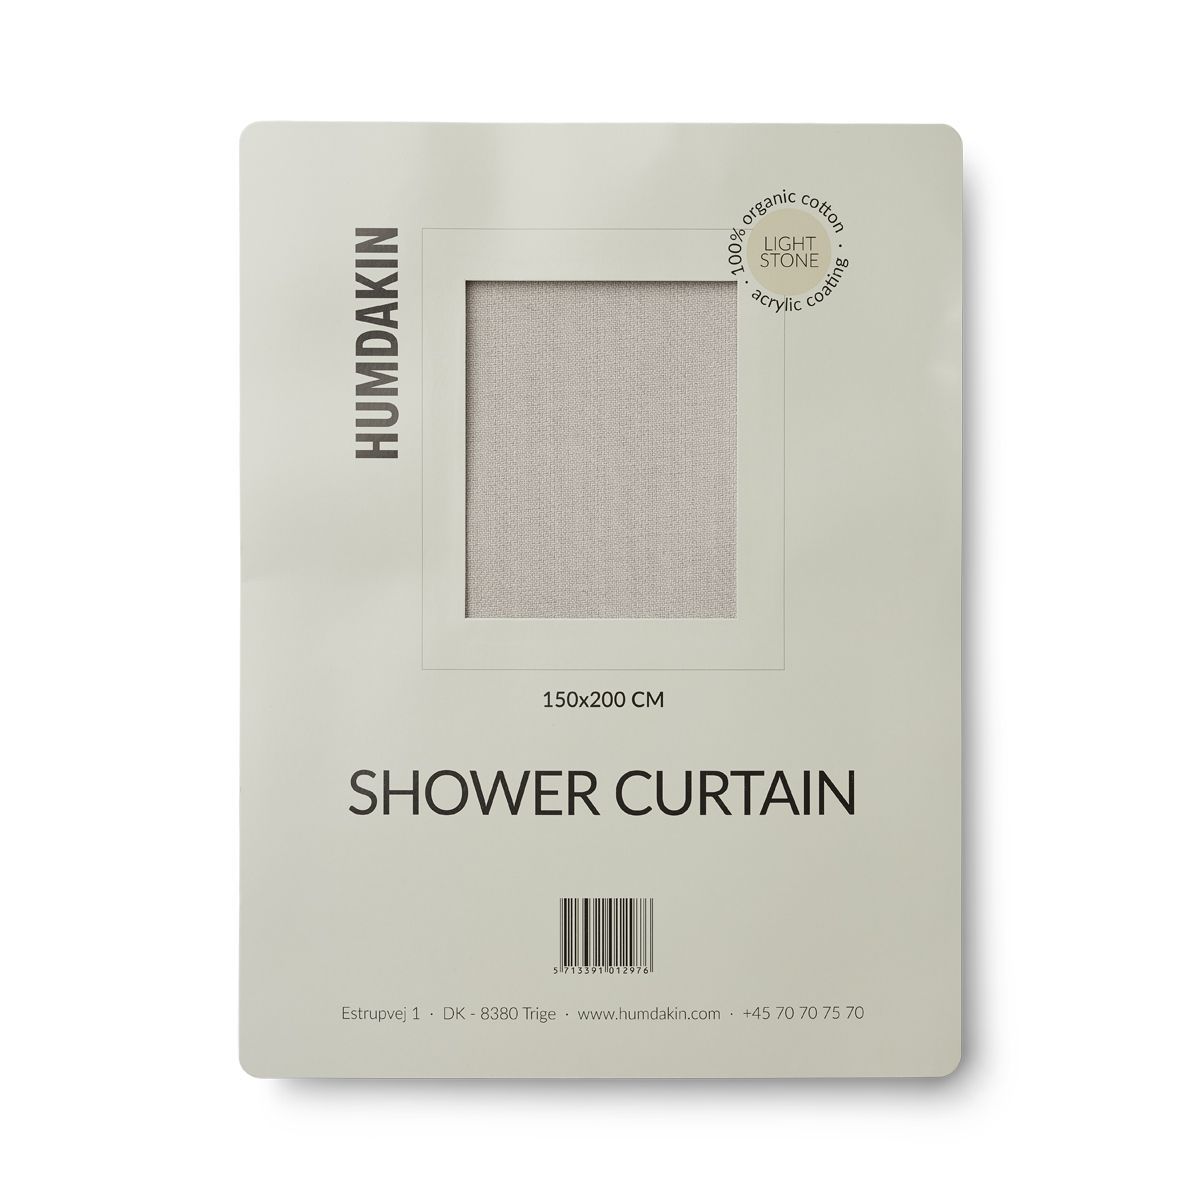 Humdakin sprchový závěs vyrobený z organické bavlny, lehký kámen